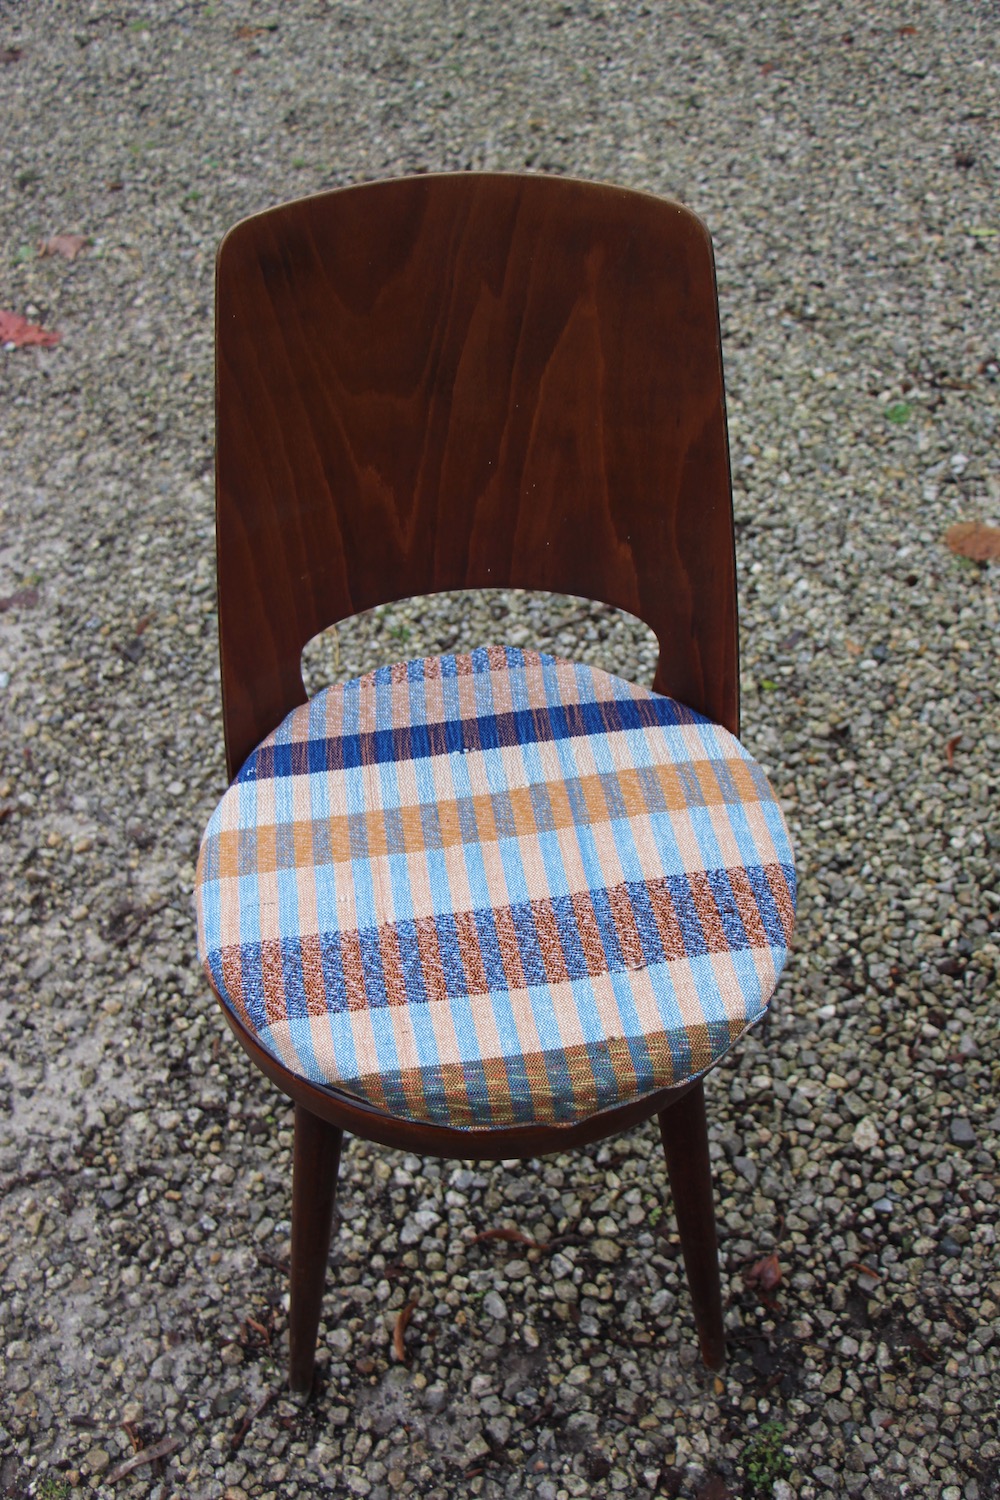 vintage Baumann chairs, Mondor